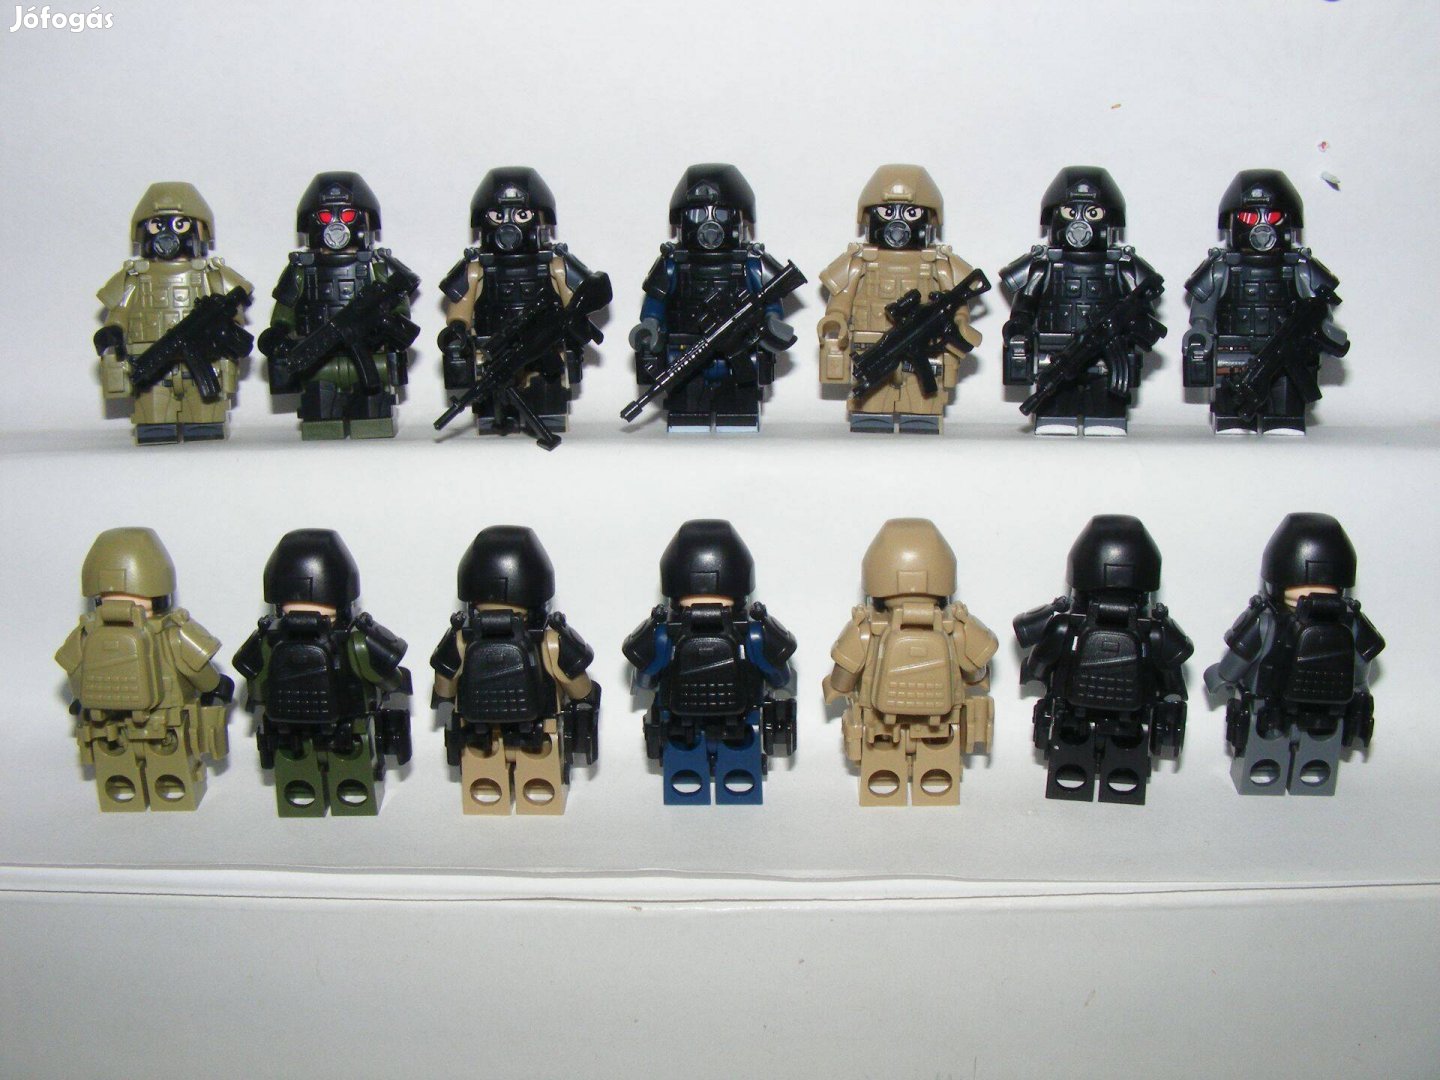 Lego SWAT Speciális kommandós figurák Specops katona Brickarms fegyver